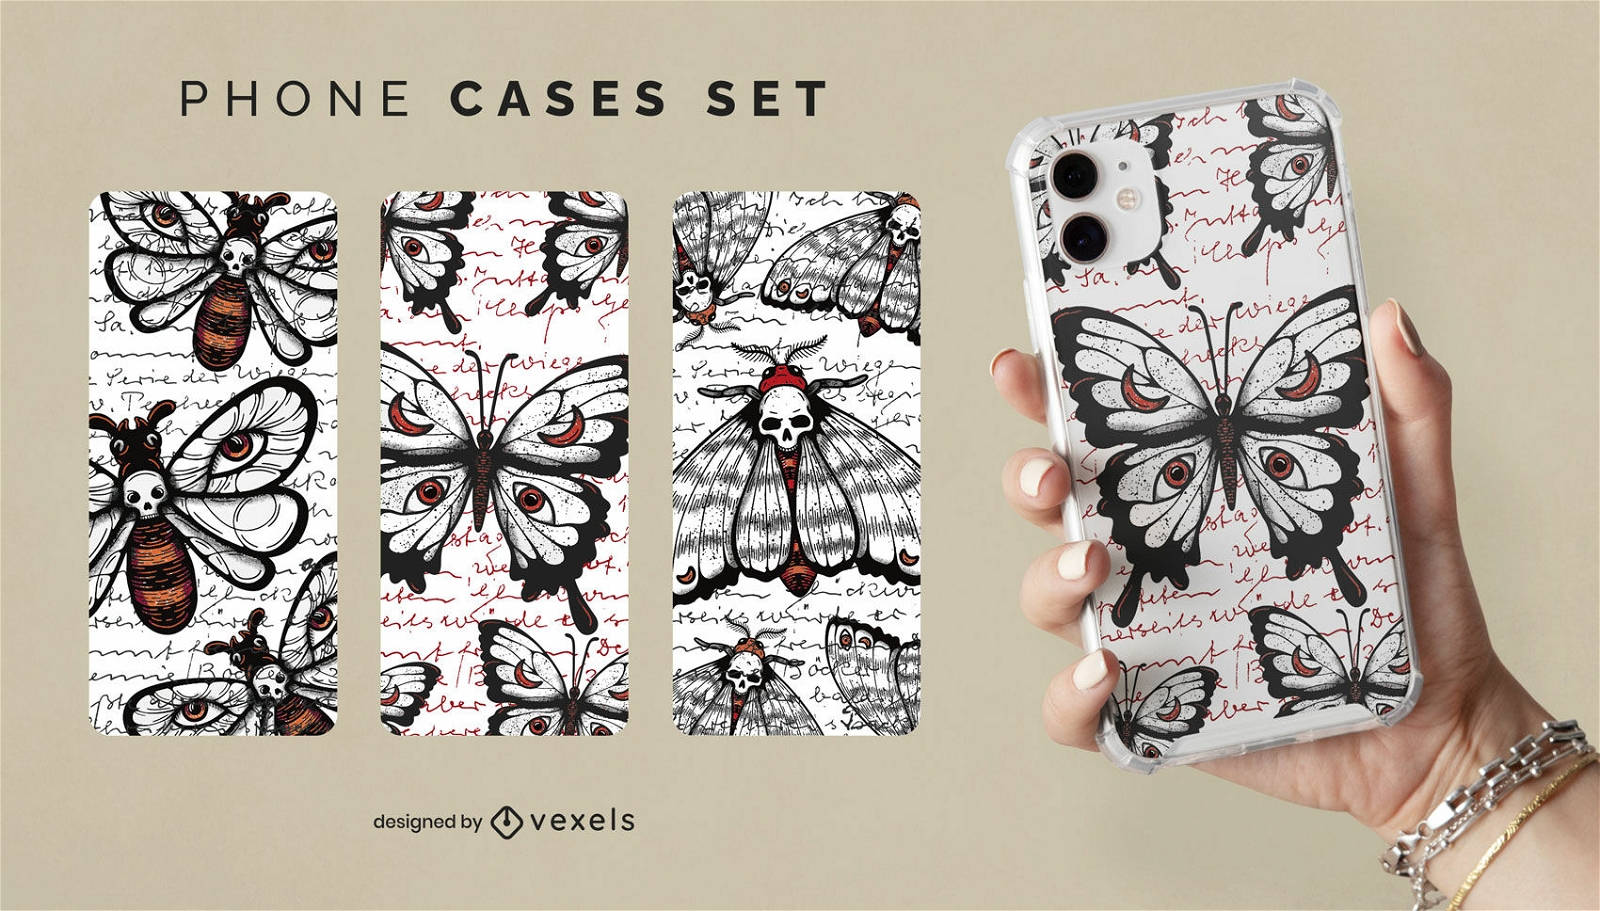 Diseño de escenografía de fundas para teléfonos con patrones de insectos oscuros.